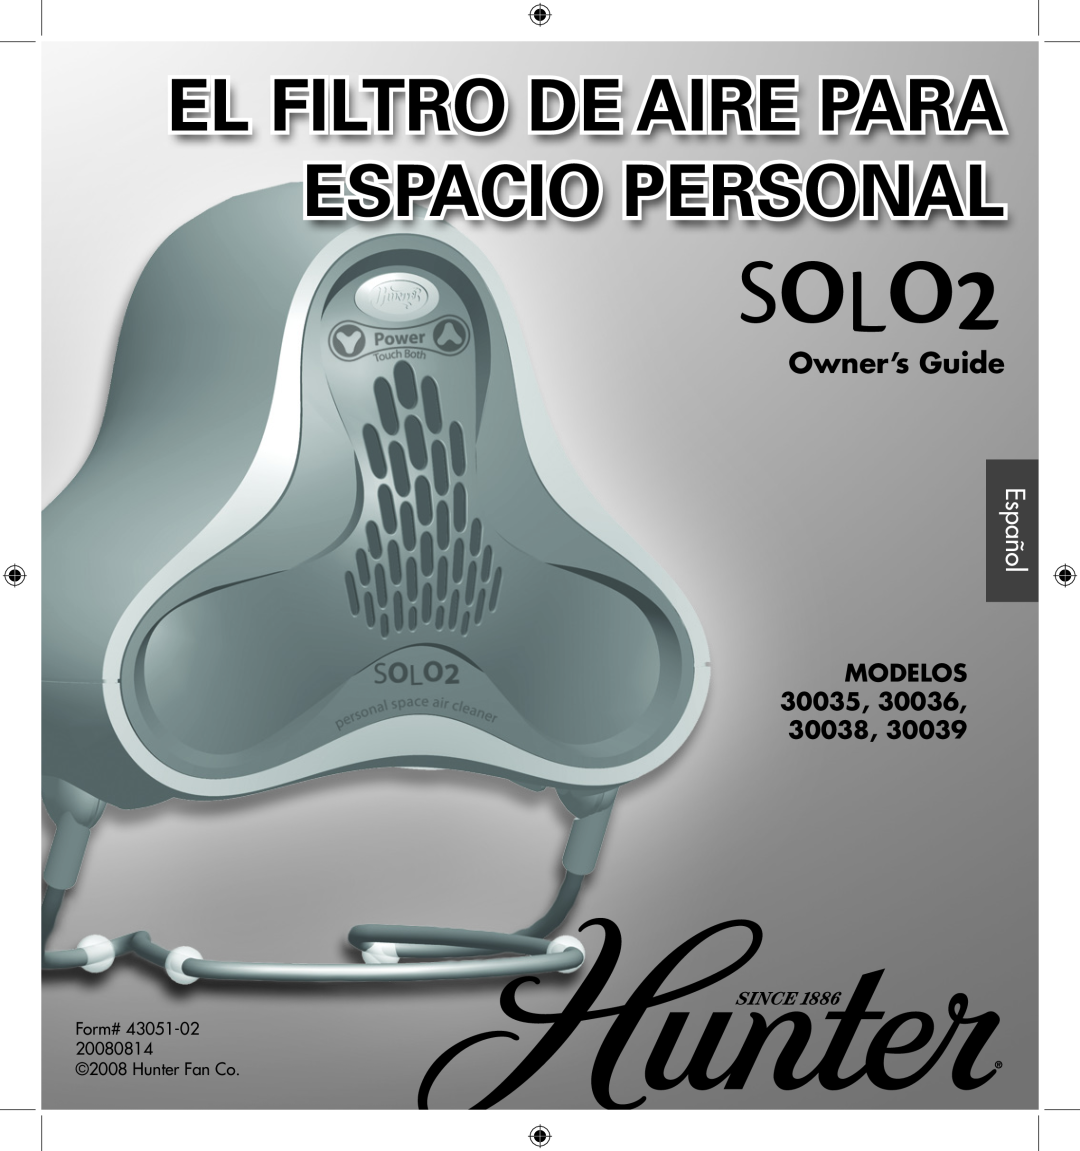 Hunter Fan 30038, 30035, 30039, 30036 manual Español, Modelos, SOLO2, Espacio Personal, El Filtro De Aire Para, Owner’s Guide 